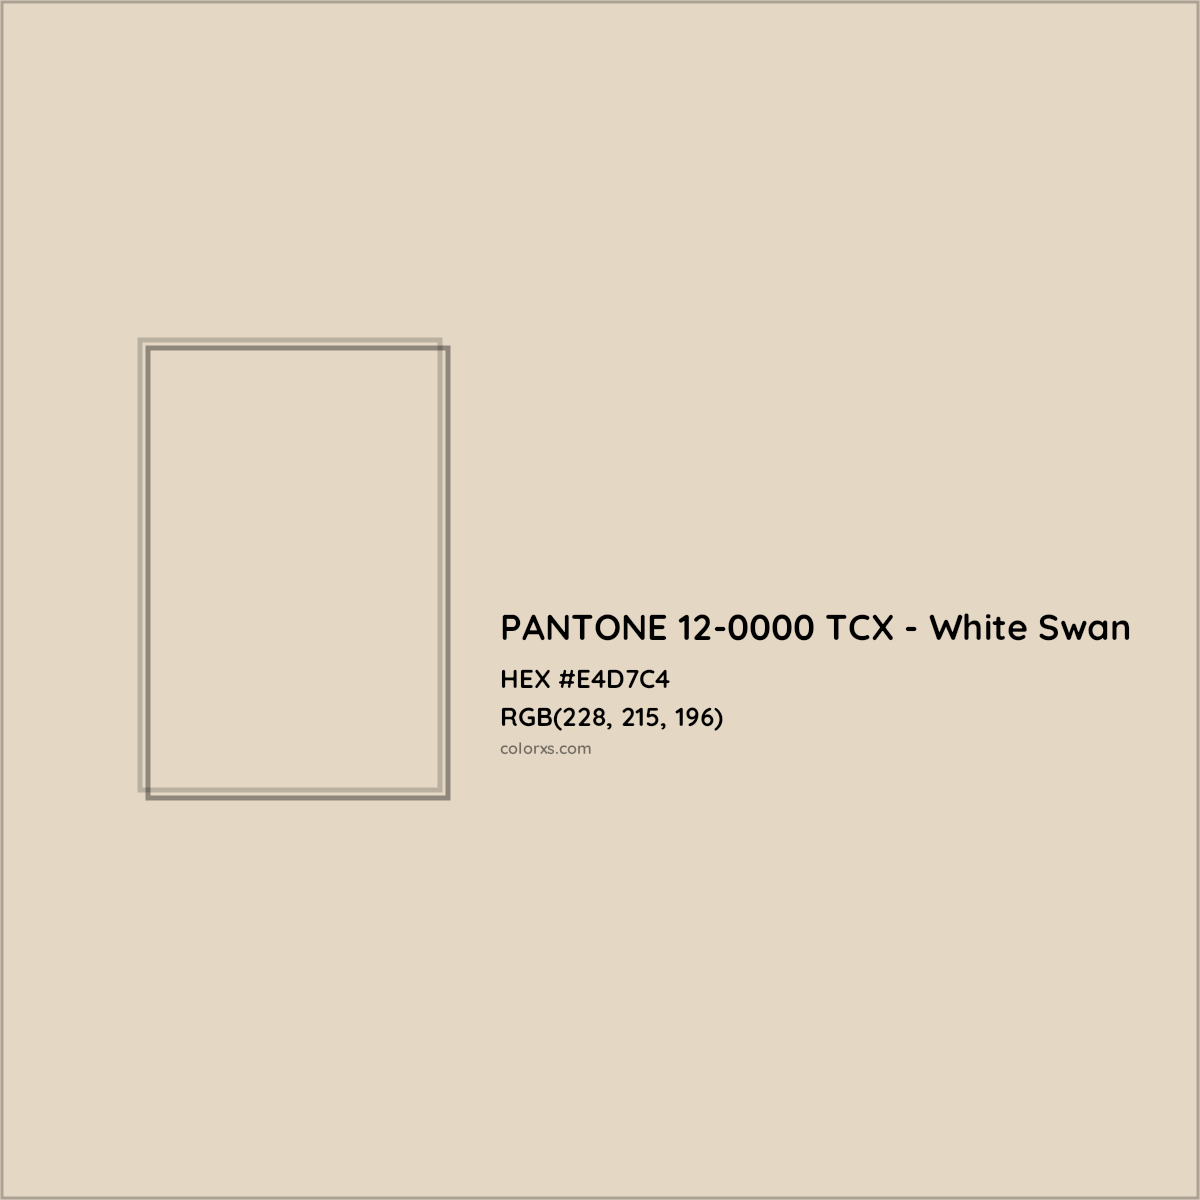 HEX #E4D7C4 PANTONE 12-0000 TCX - White Swan CMS Pantone TCX - Color Code